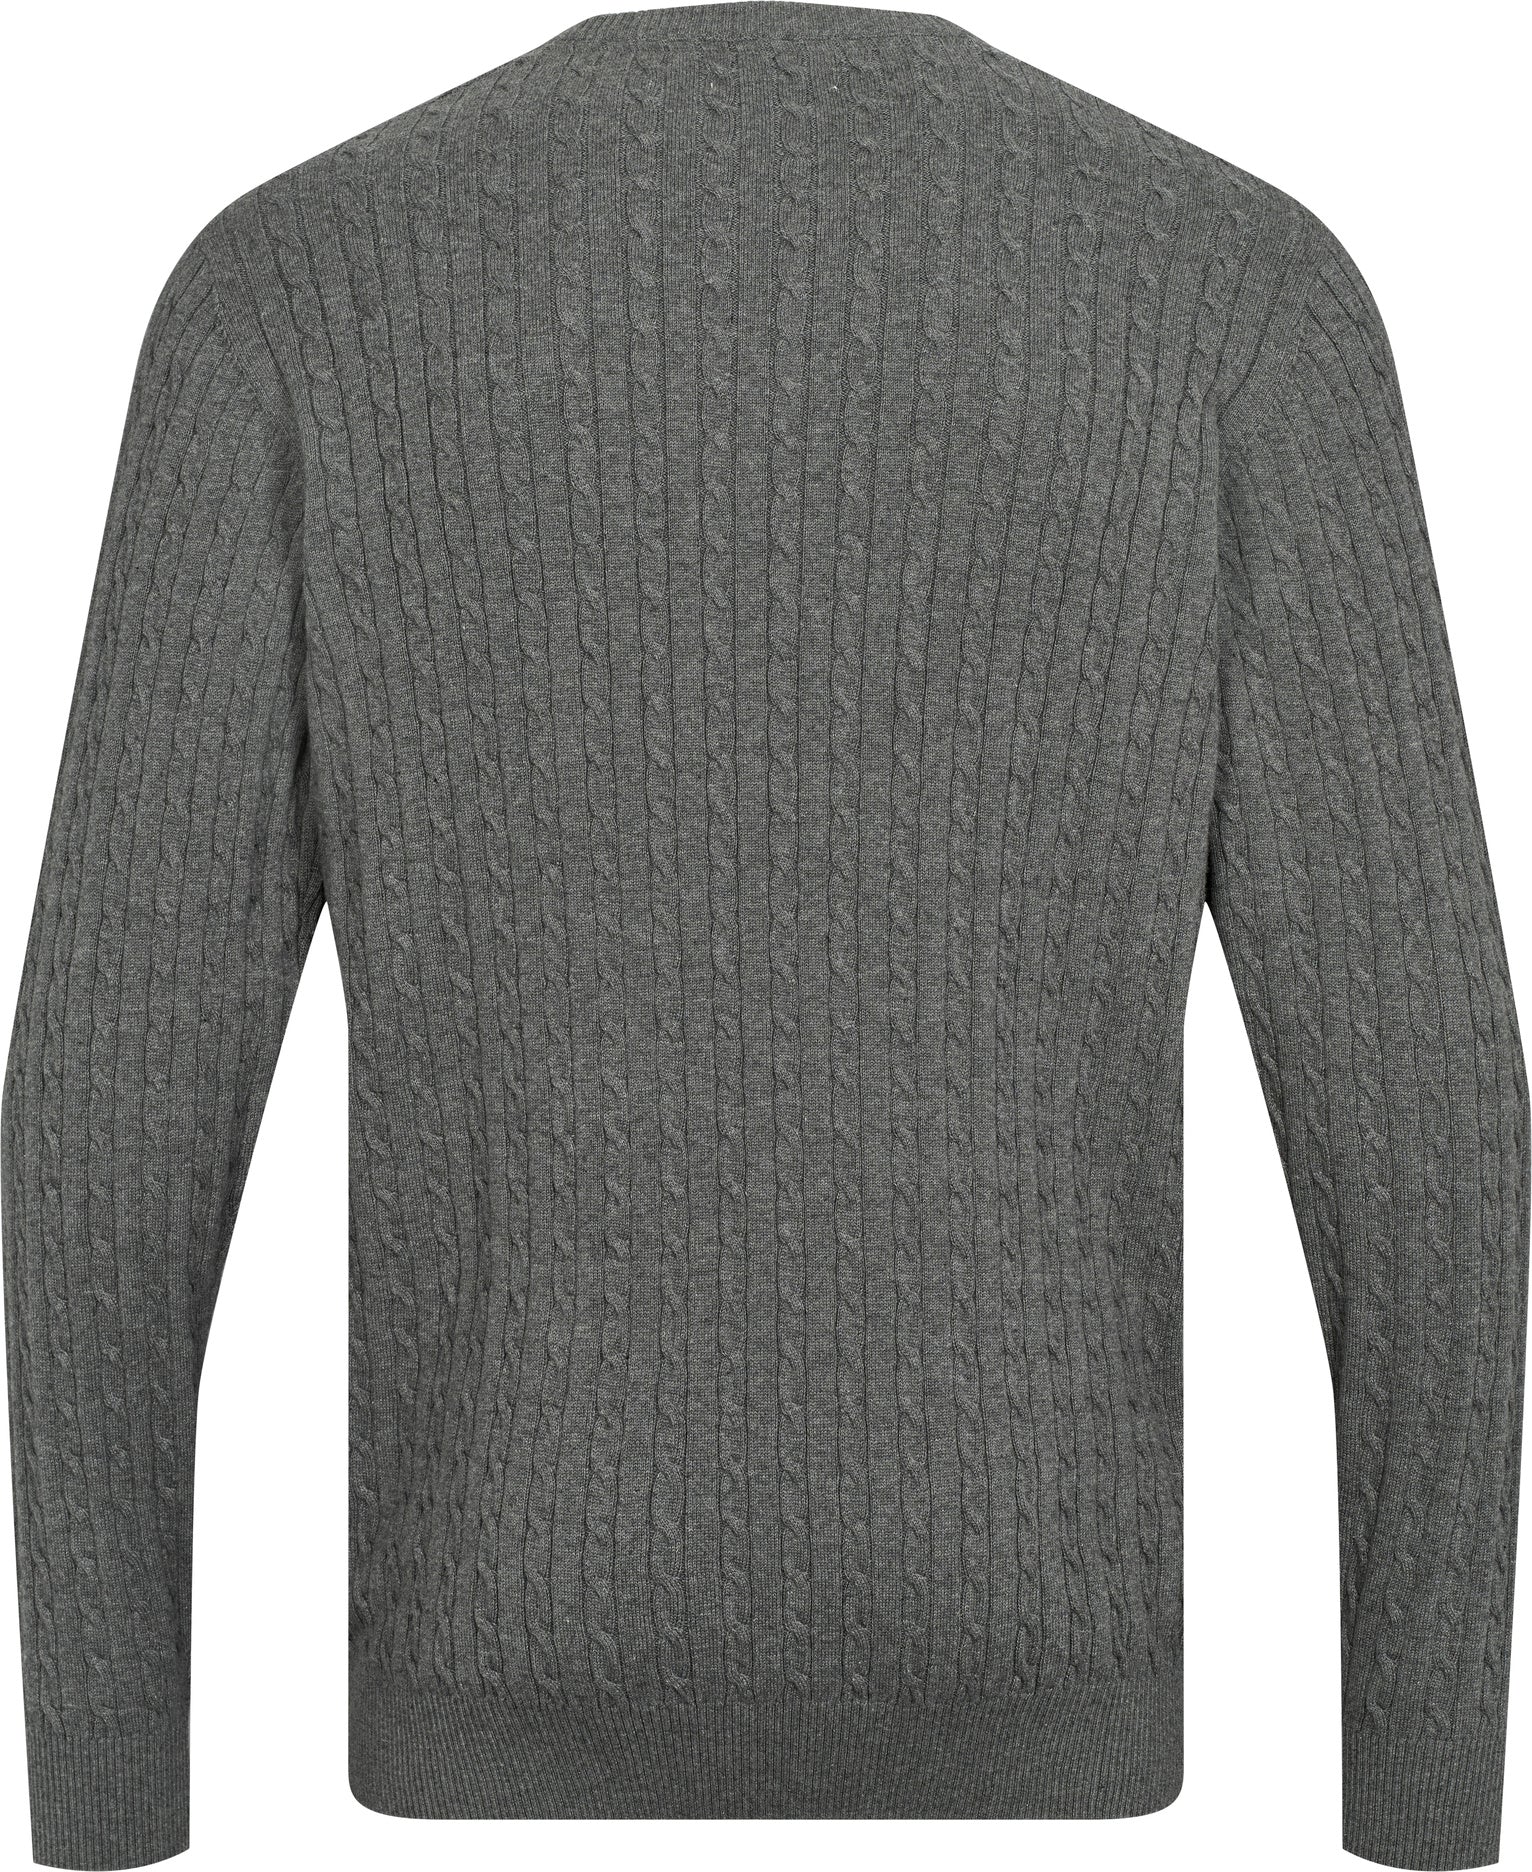 USPA Knit Archi Men - Medium Grey Melange